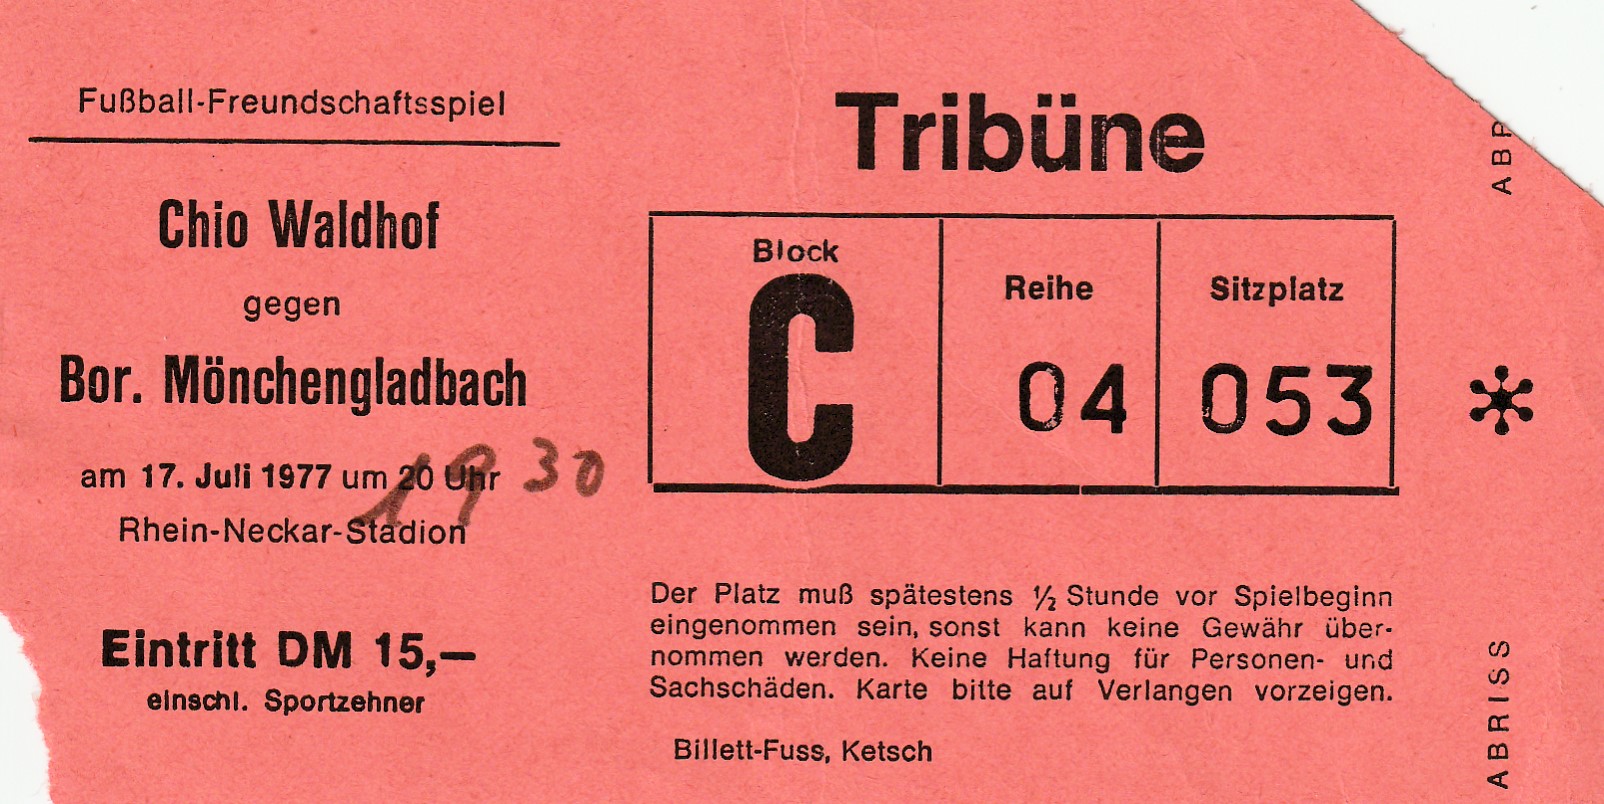 Eintrittskarte Testspiel 1977 78 SV Chio Waldhof-Borussia Mönchengladbach.jpg